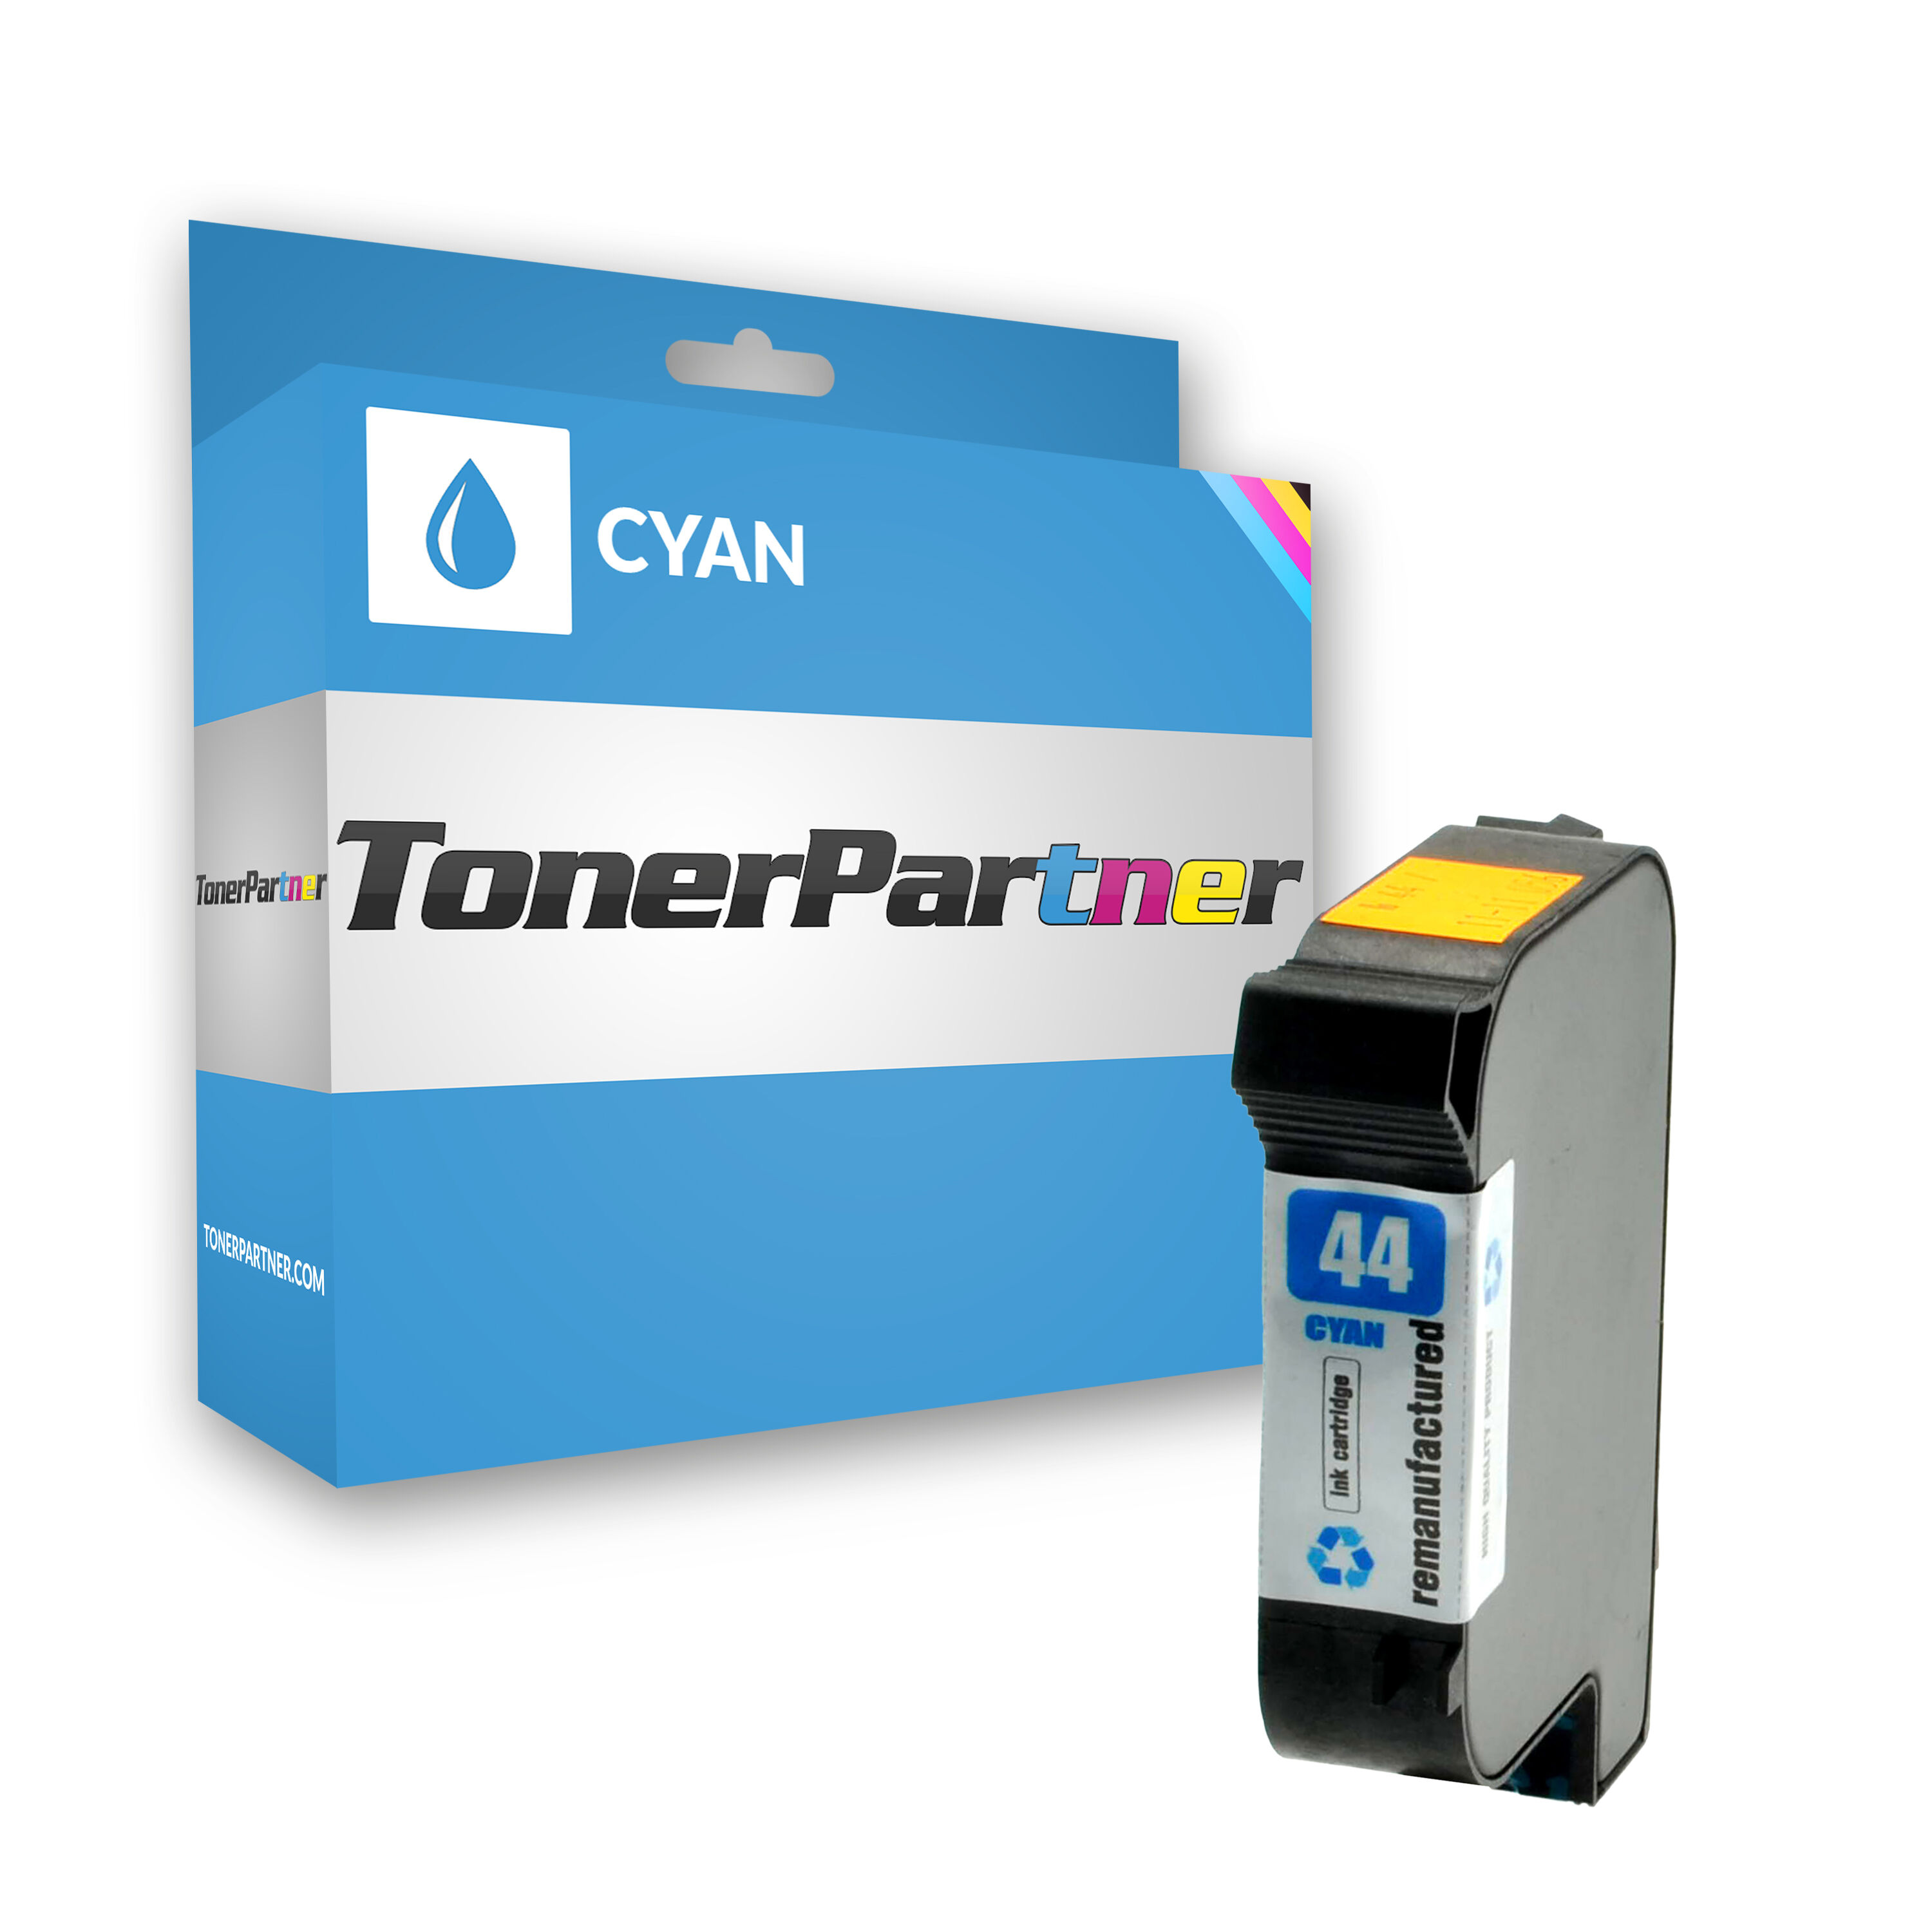 TonerPartner Kompatibel zu HP DesignJet 350 C Tintenpatrone (44 / 51644 CE) cyan, 1.600 Seiten, 1,59 Rp pro Seite, Inhalt: 42 ml von TonerPartner